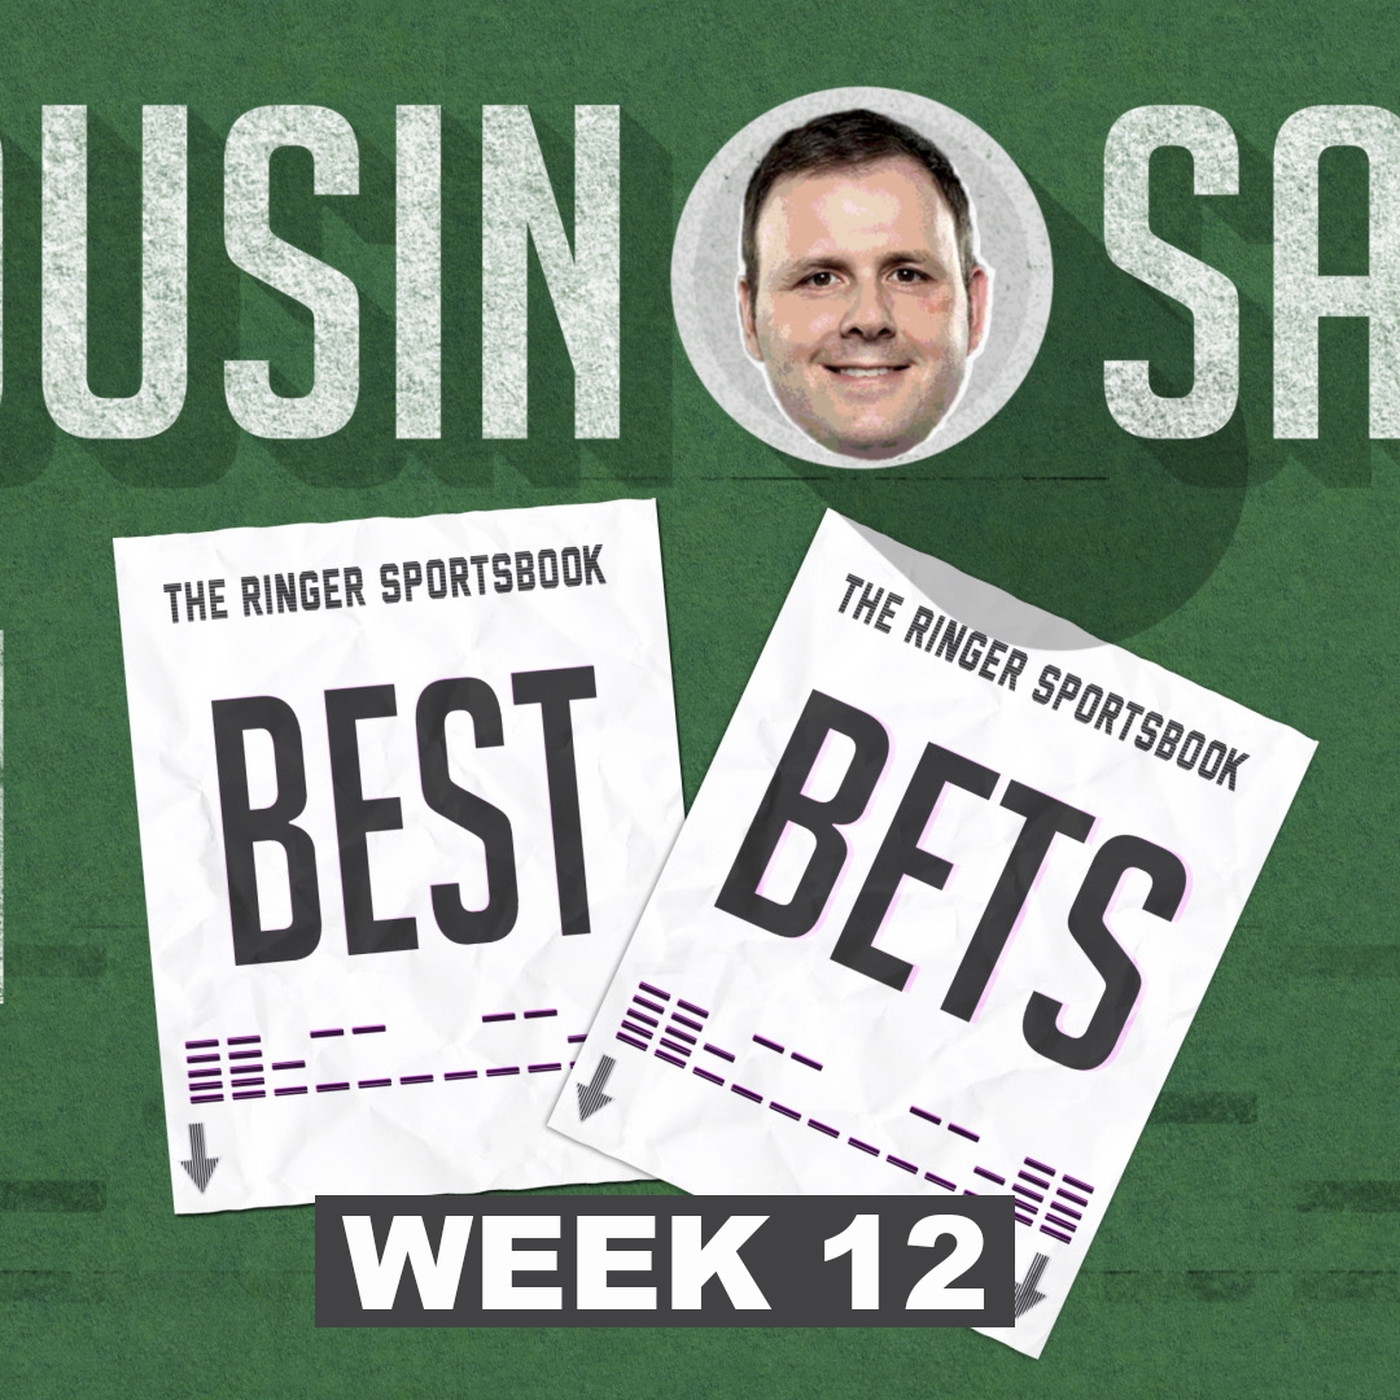 week 12 bets